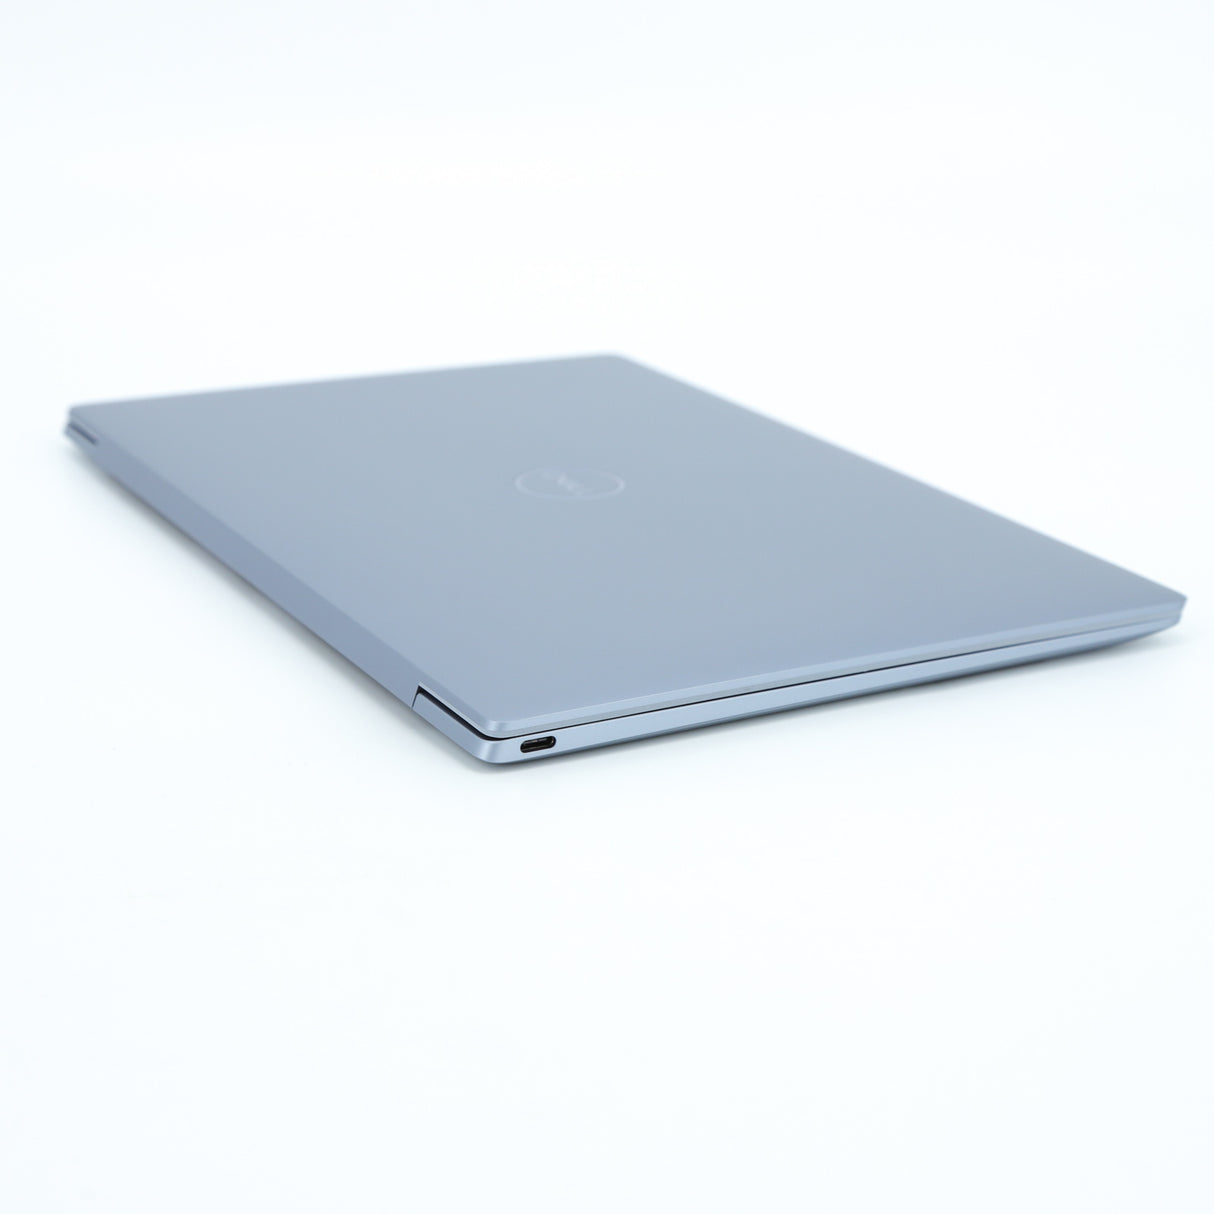 Dell XPS 13 9315 Laptop: 13.4", 12th Gen Core i5, 512GB SSD, 16GB RAM, Warranty - GreenGreen Store